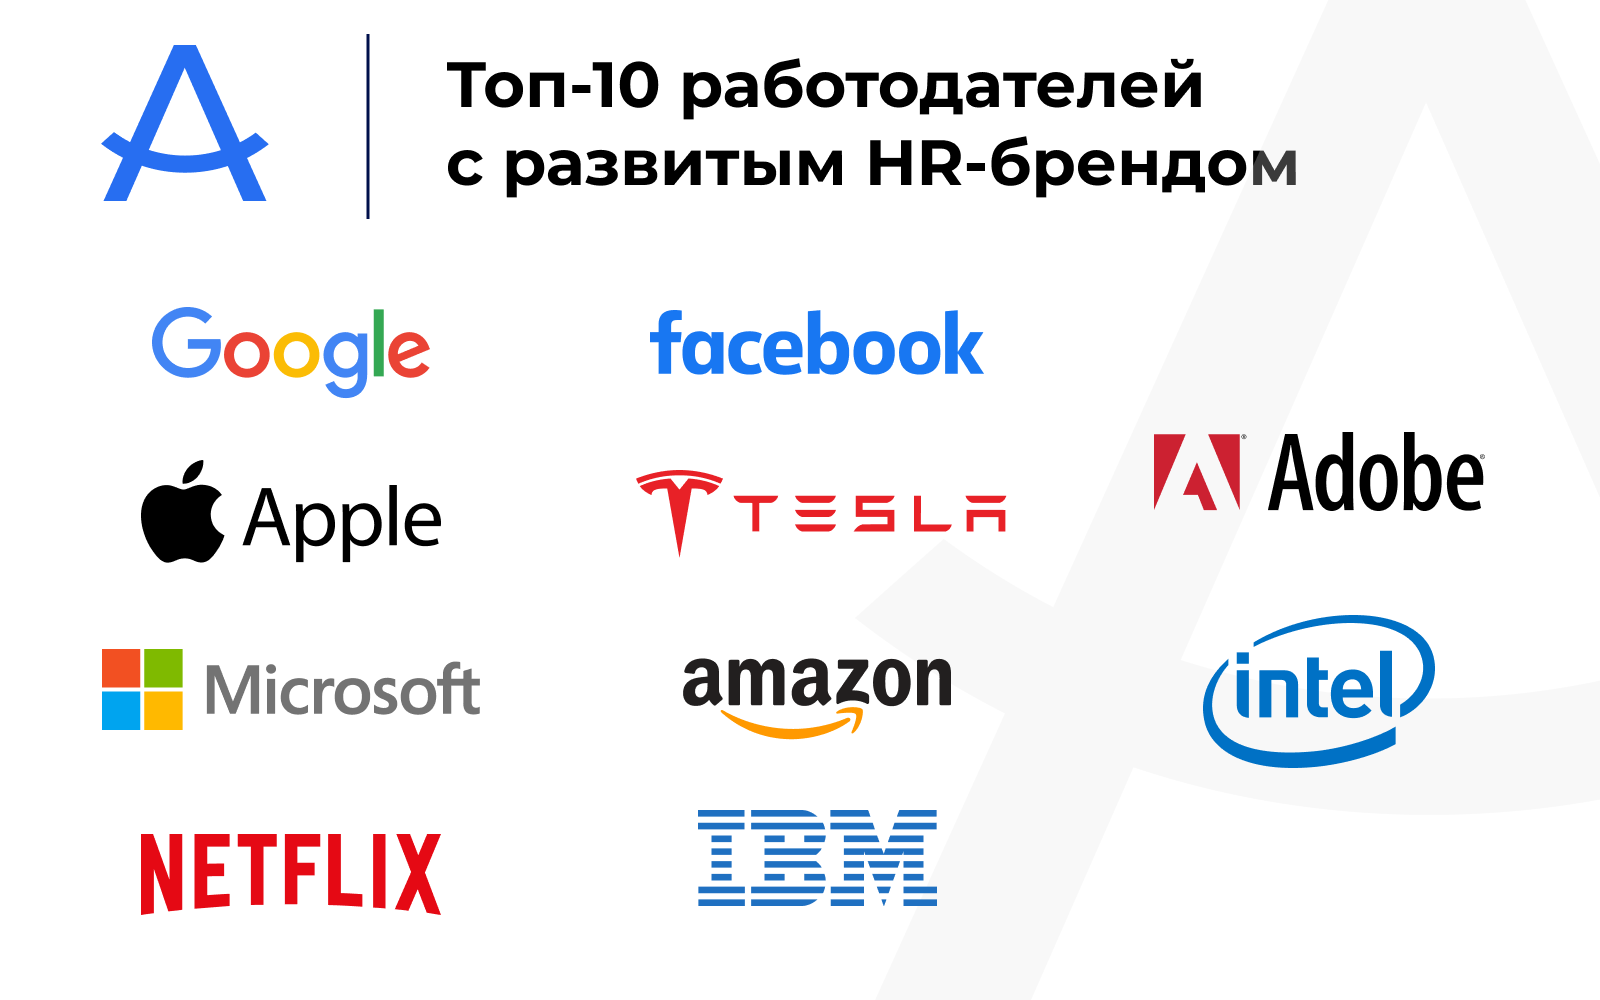 Топ-10 мировых компаний с развитым HR-брендом